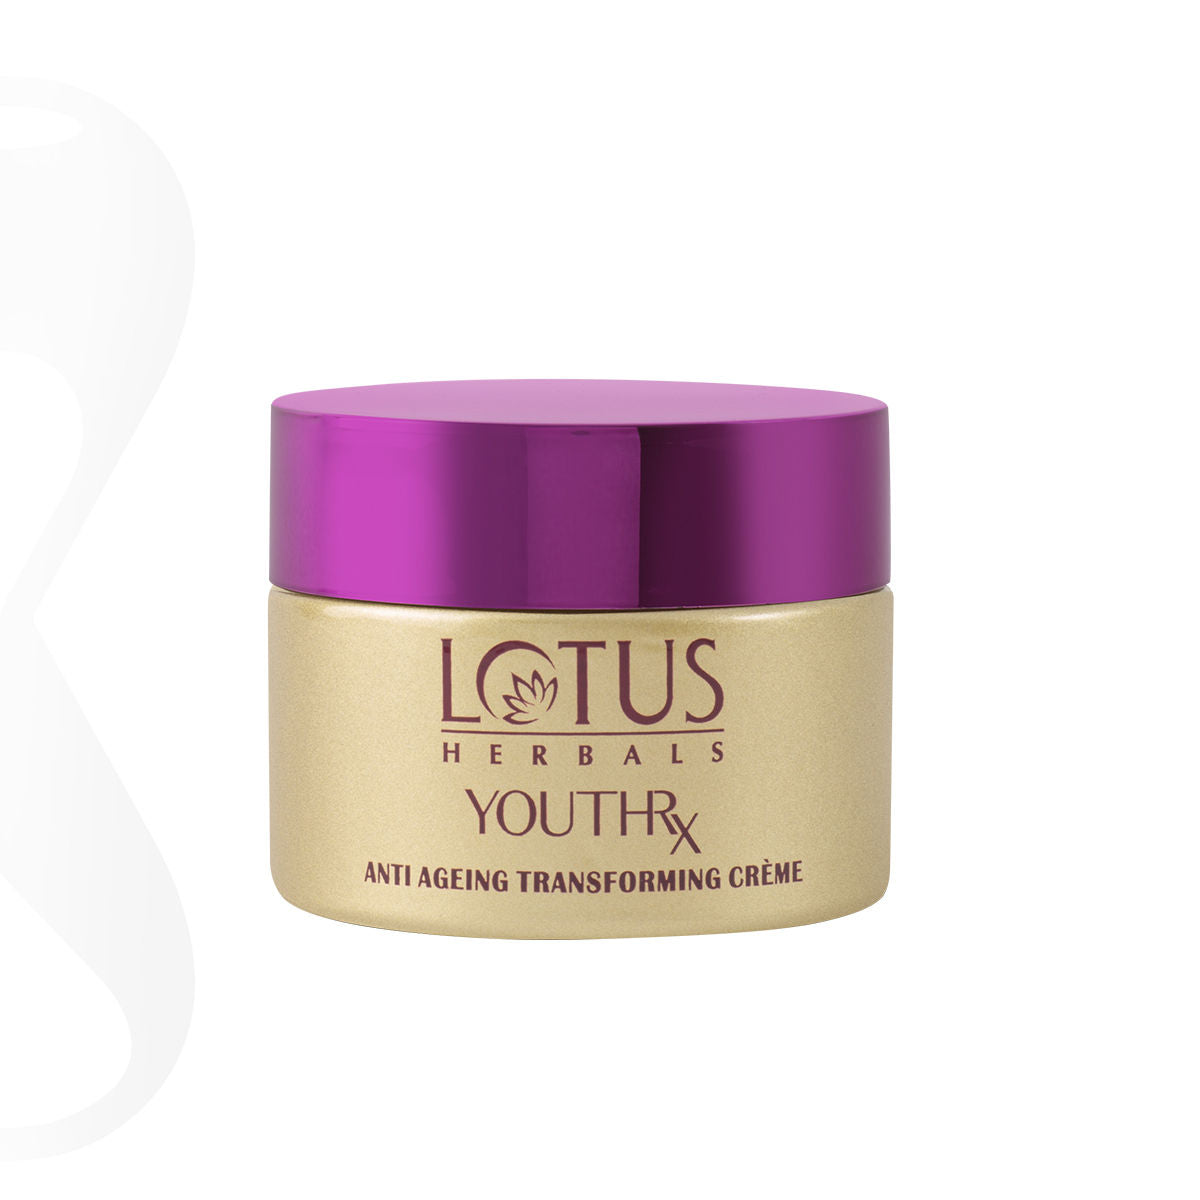 Lotus Herbals Youthrx Anti Ageing Transforming Gel Creme (50 g) Lotus Herbals